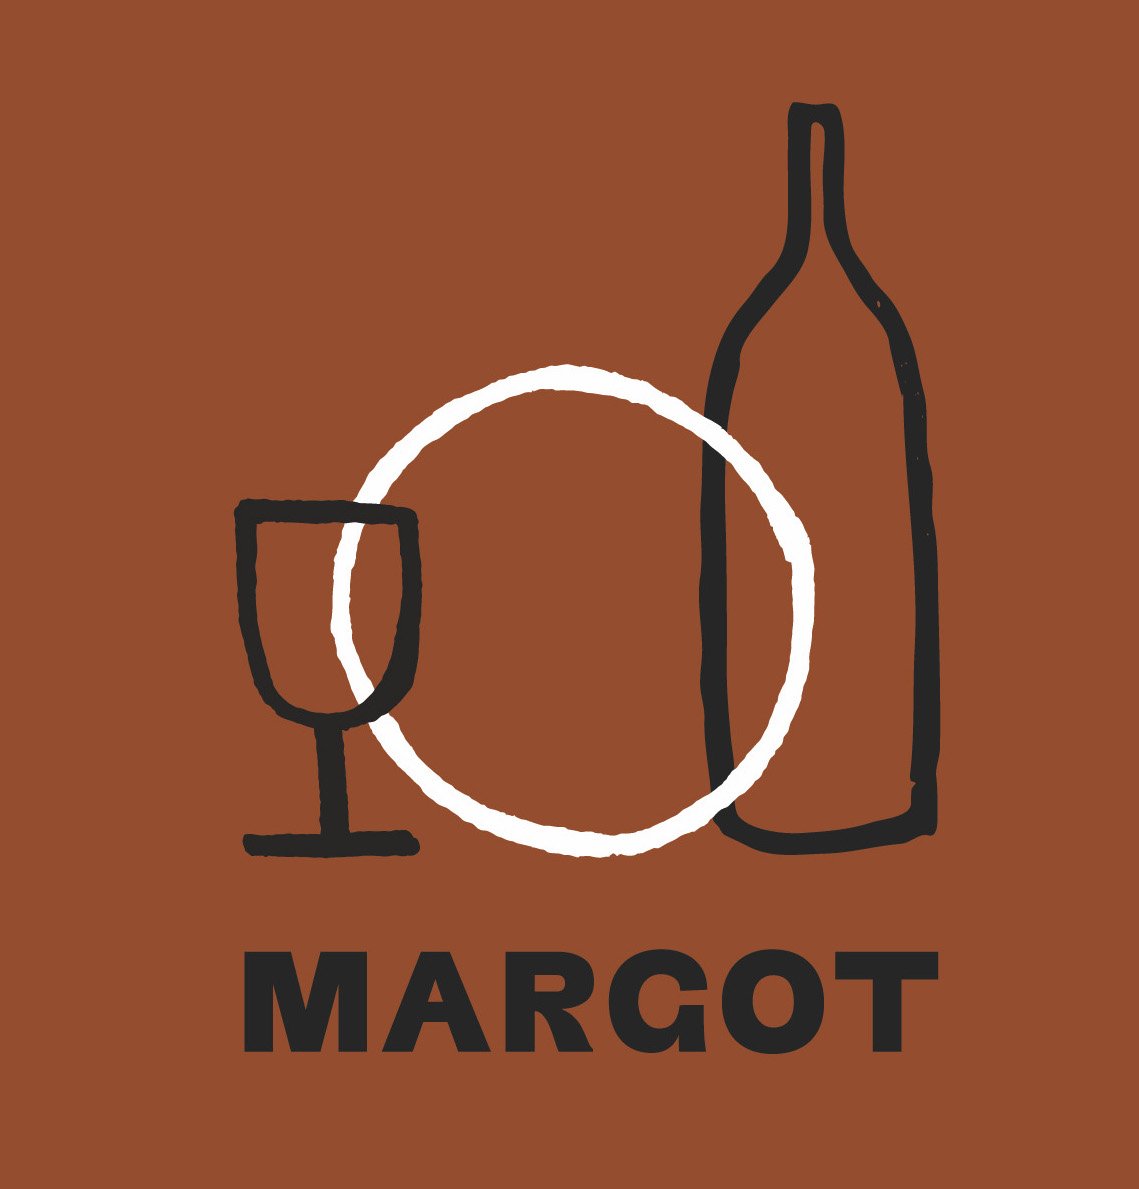 MARGOT-INSTA-04-2 copy.jpg